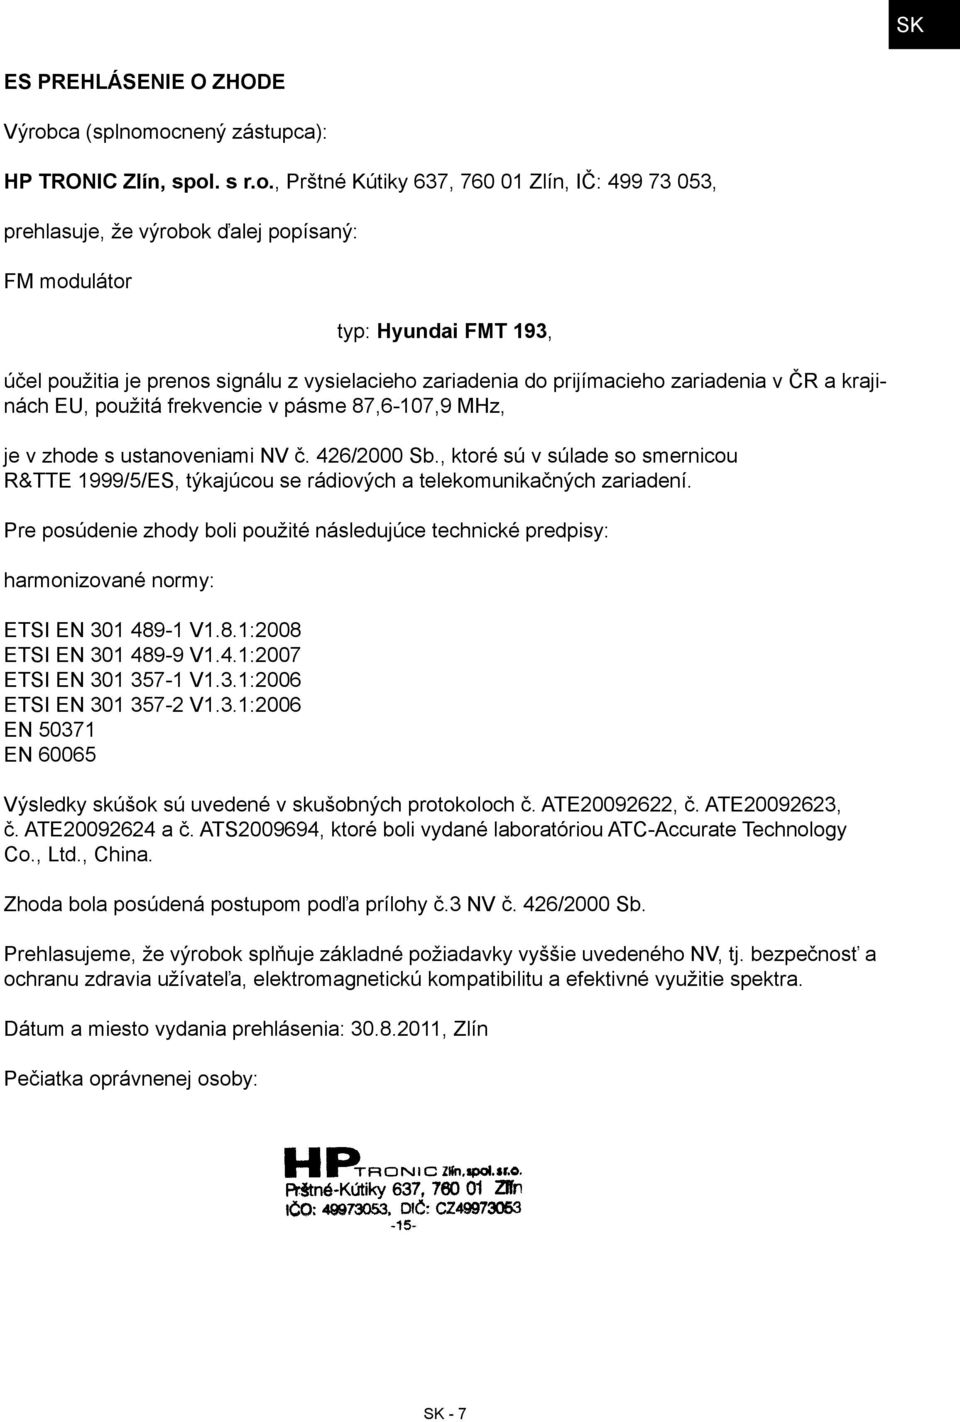 ocnený zástupca): HP TRONIC Zlín, spol. s r.o., Prštné Kútiky 637, 760 01 Zlín, IČ: 499 73 053, prehlasuje, že výrobok ďalej popísaný: FM modulátor typ: Hyundai FMT 193, účel použitia je prenos